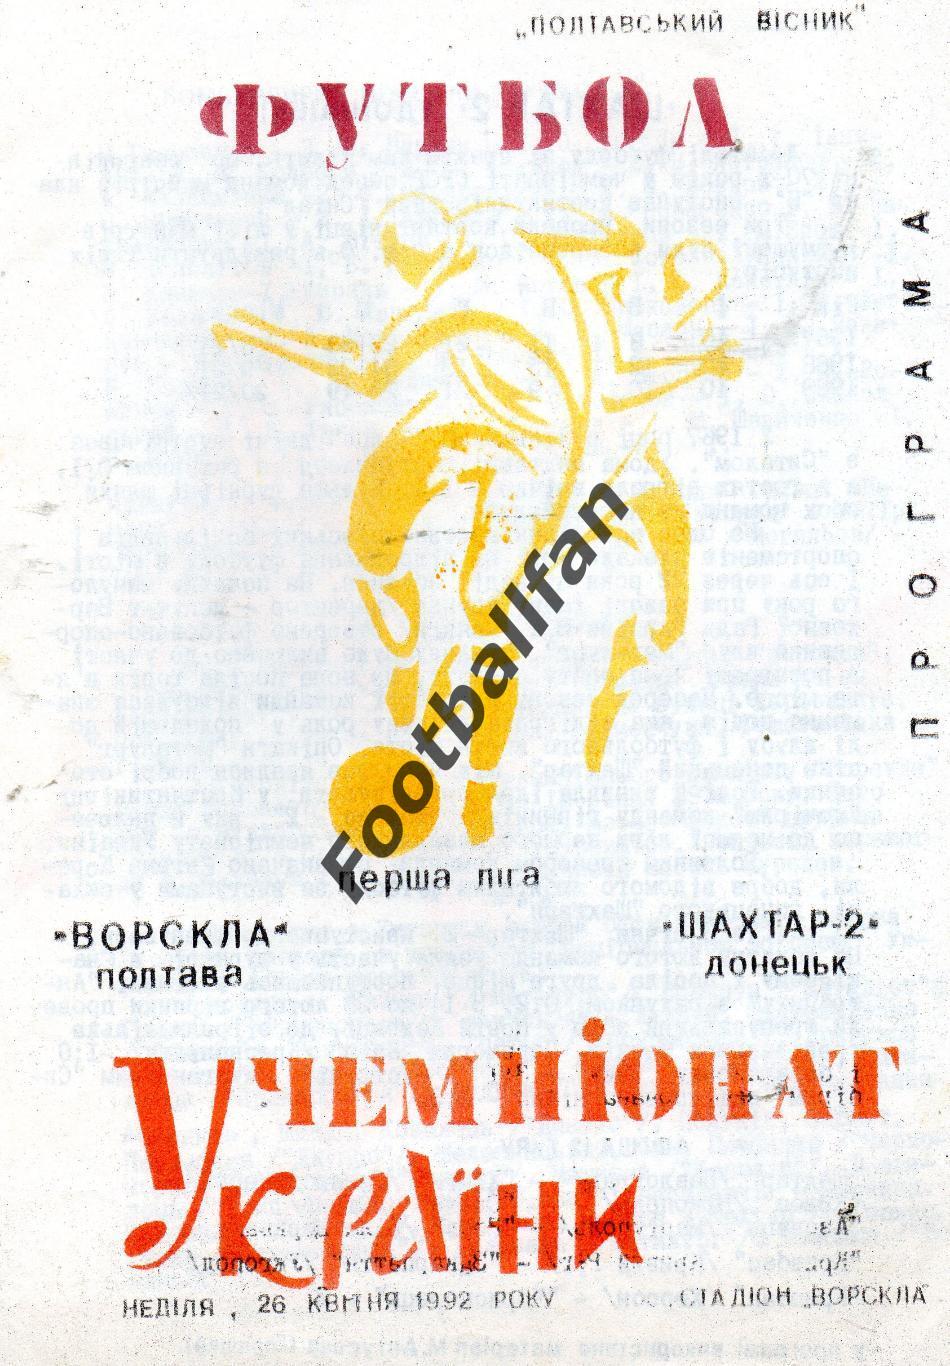 Ворскла Полтава - Шахтер-2 Донецк 26.04.1992